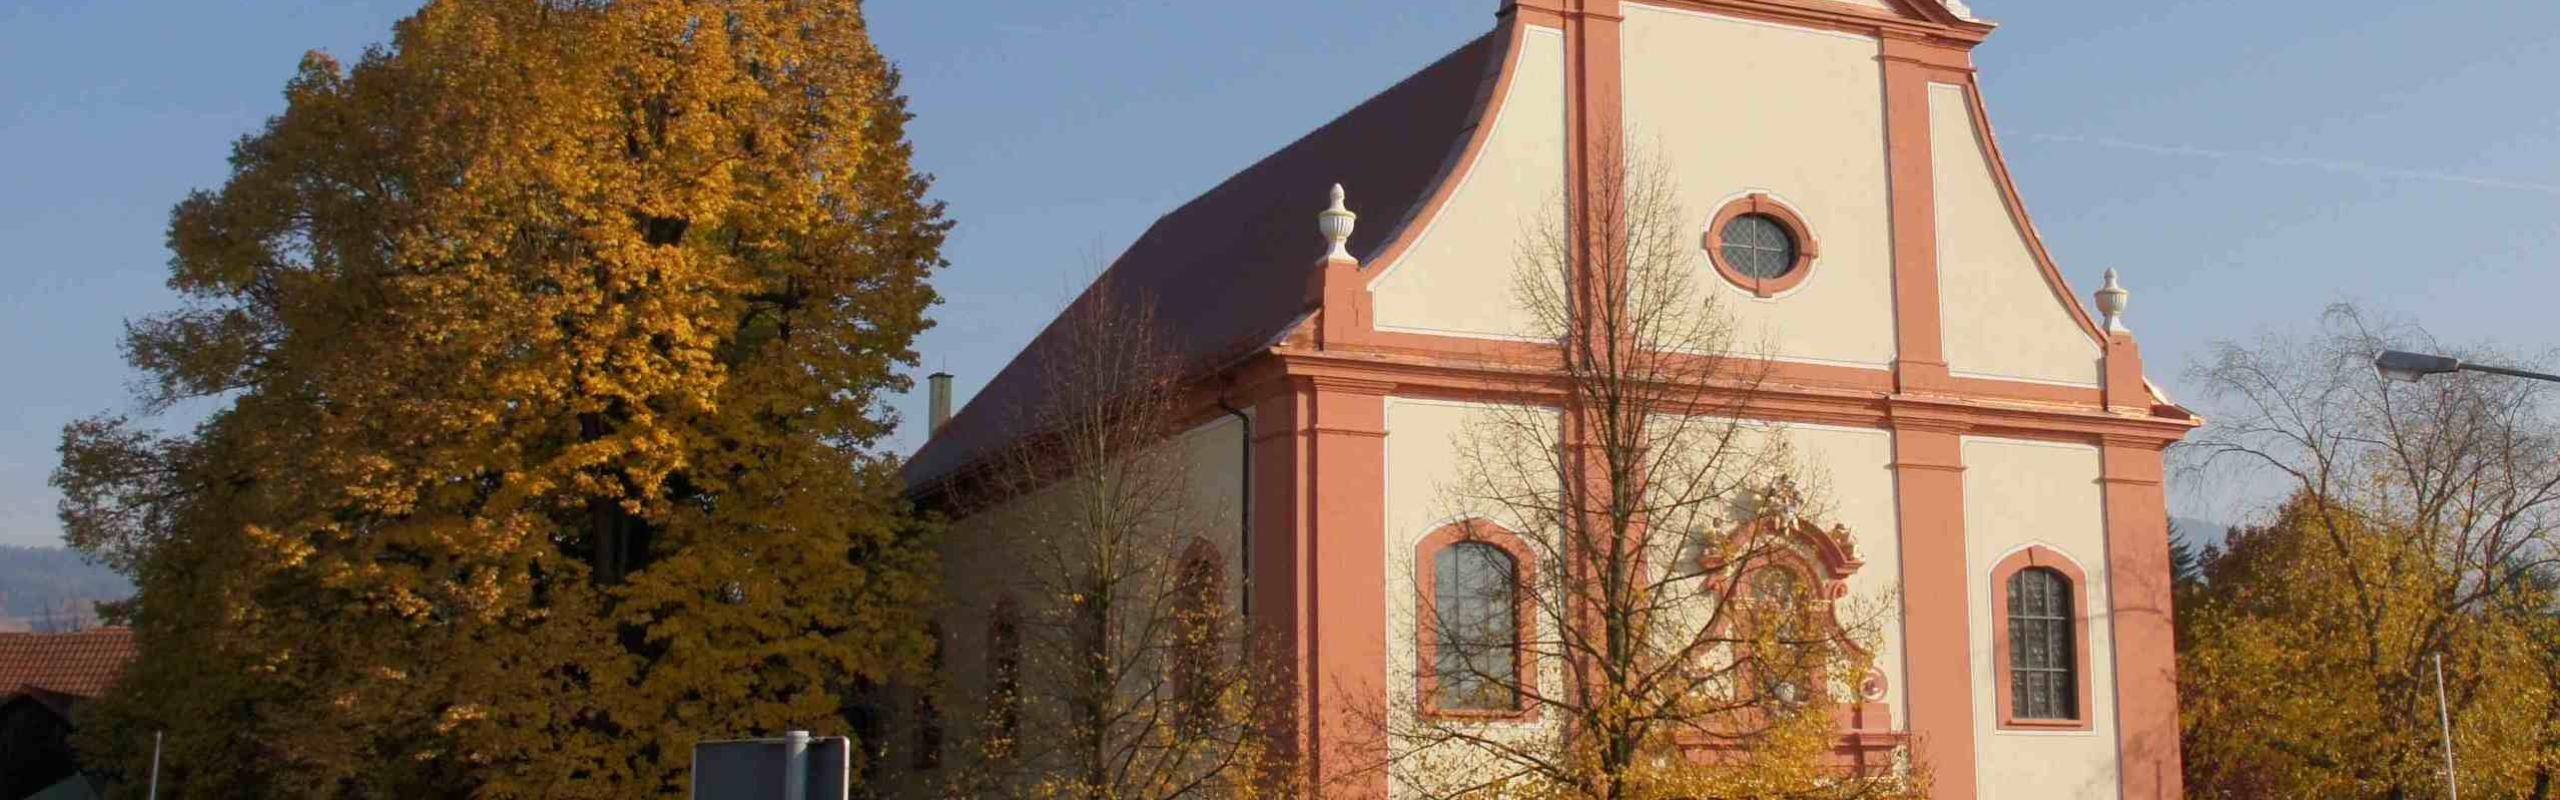 Das Bild zeigt eine Außenansicht einer Kirche mit einem herbstlichen großen Baum n